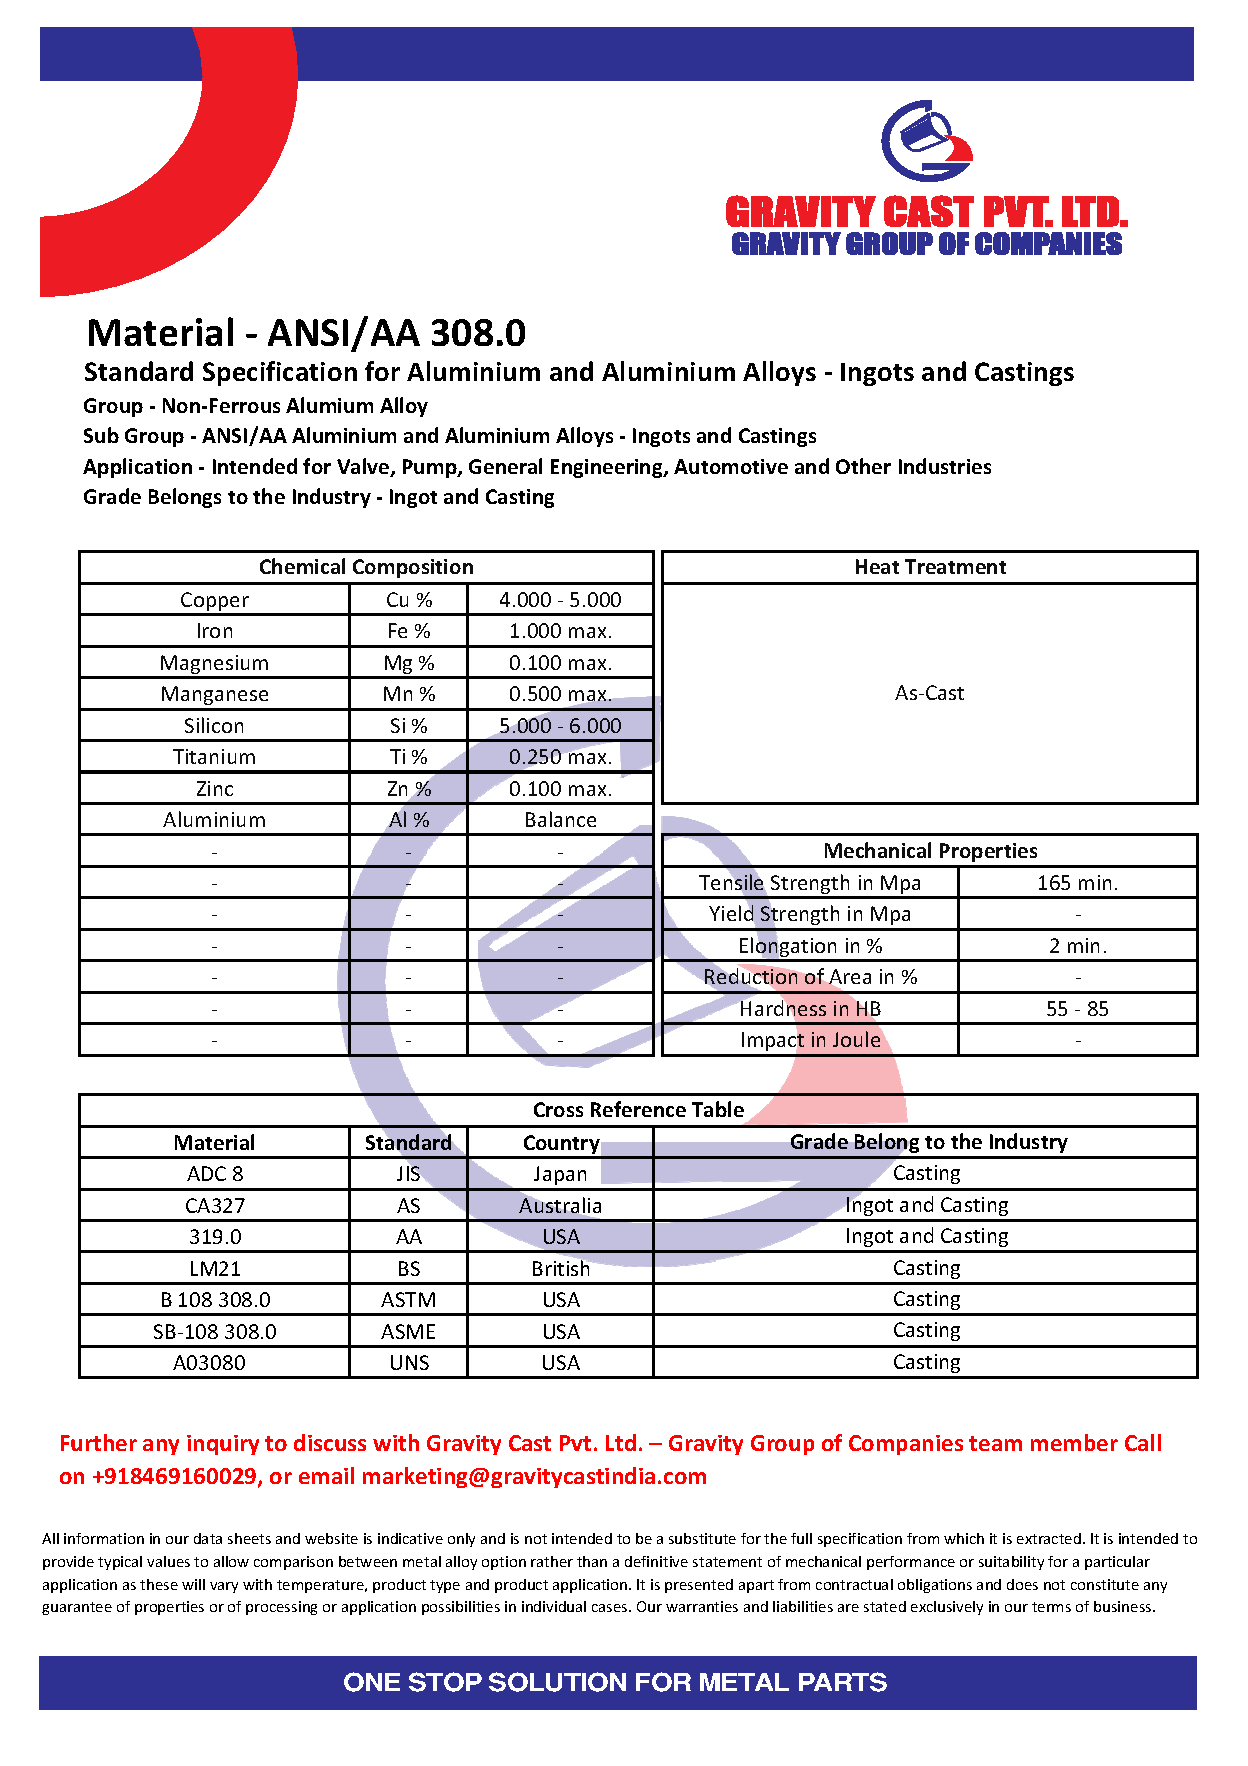 ANSI_AA 308.0.pdf